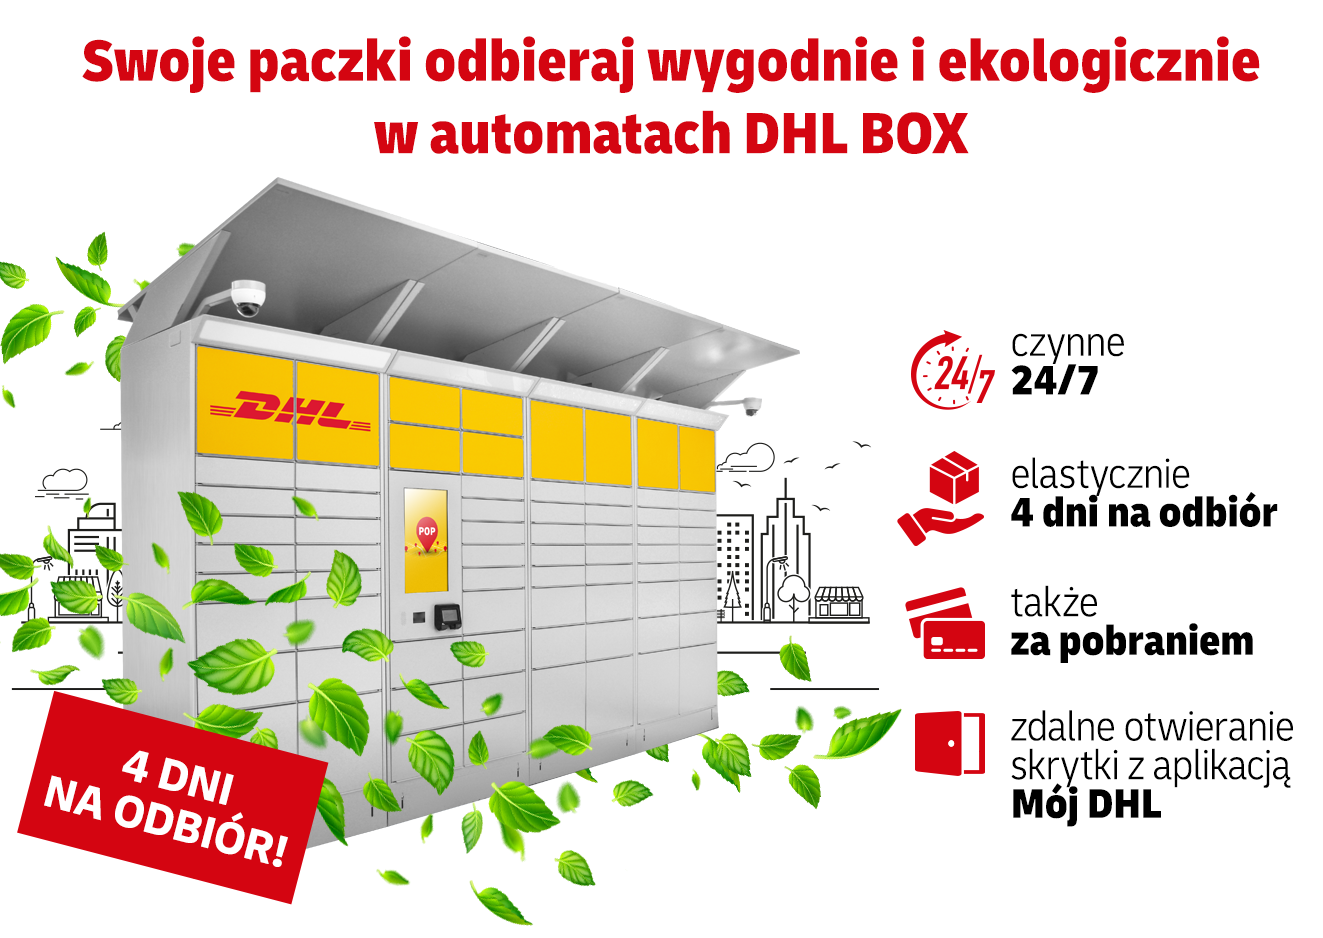 Swoje paczki odbieraj wygodnie i ekologicznie w automatach DHL BOX. Czynne 24/7. Elastycznie 4 dni na odbiór. Także za pobraniem. Zdalne otwieranie skrytki z aplikacją Mój DHL.